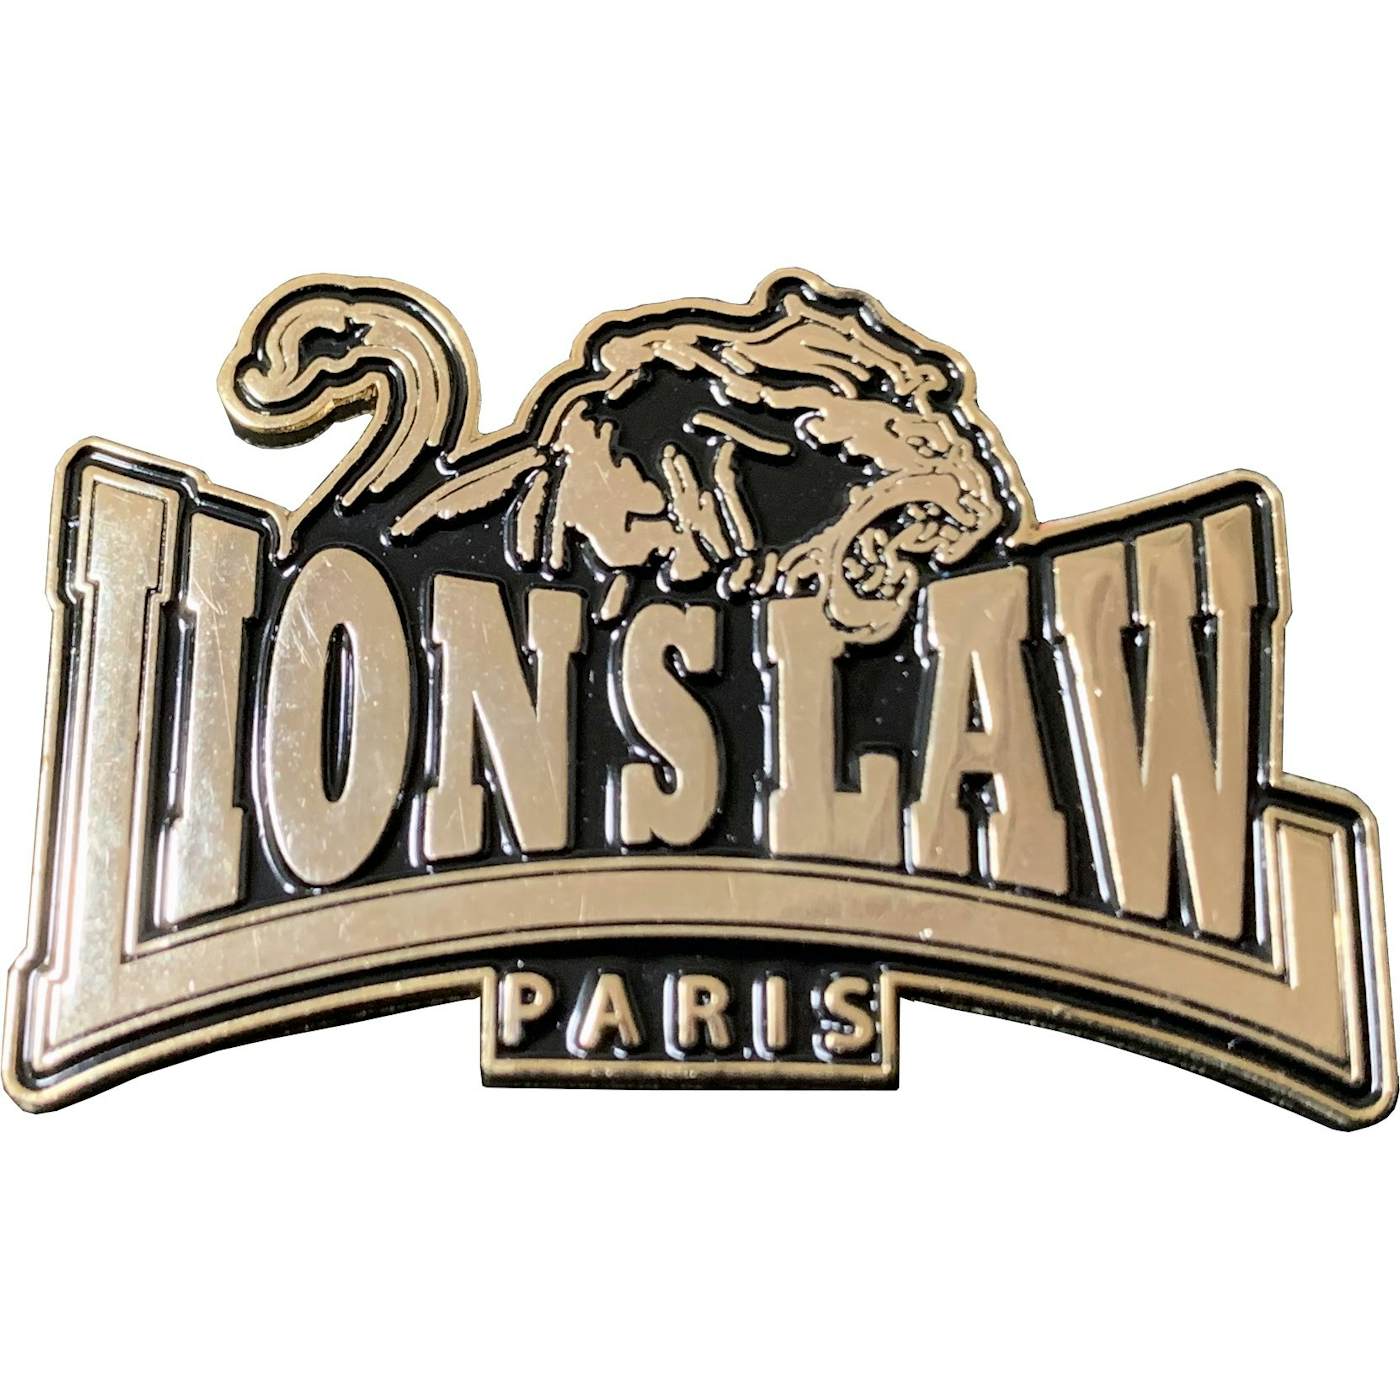 Lion's Law - Paris Logo - Enamel Pin - 1.5"